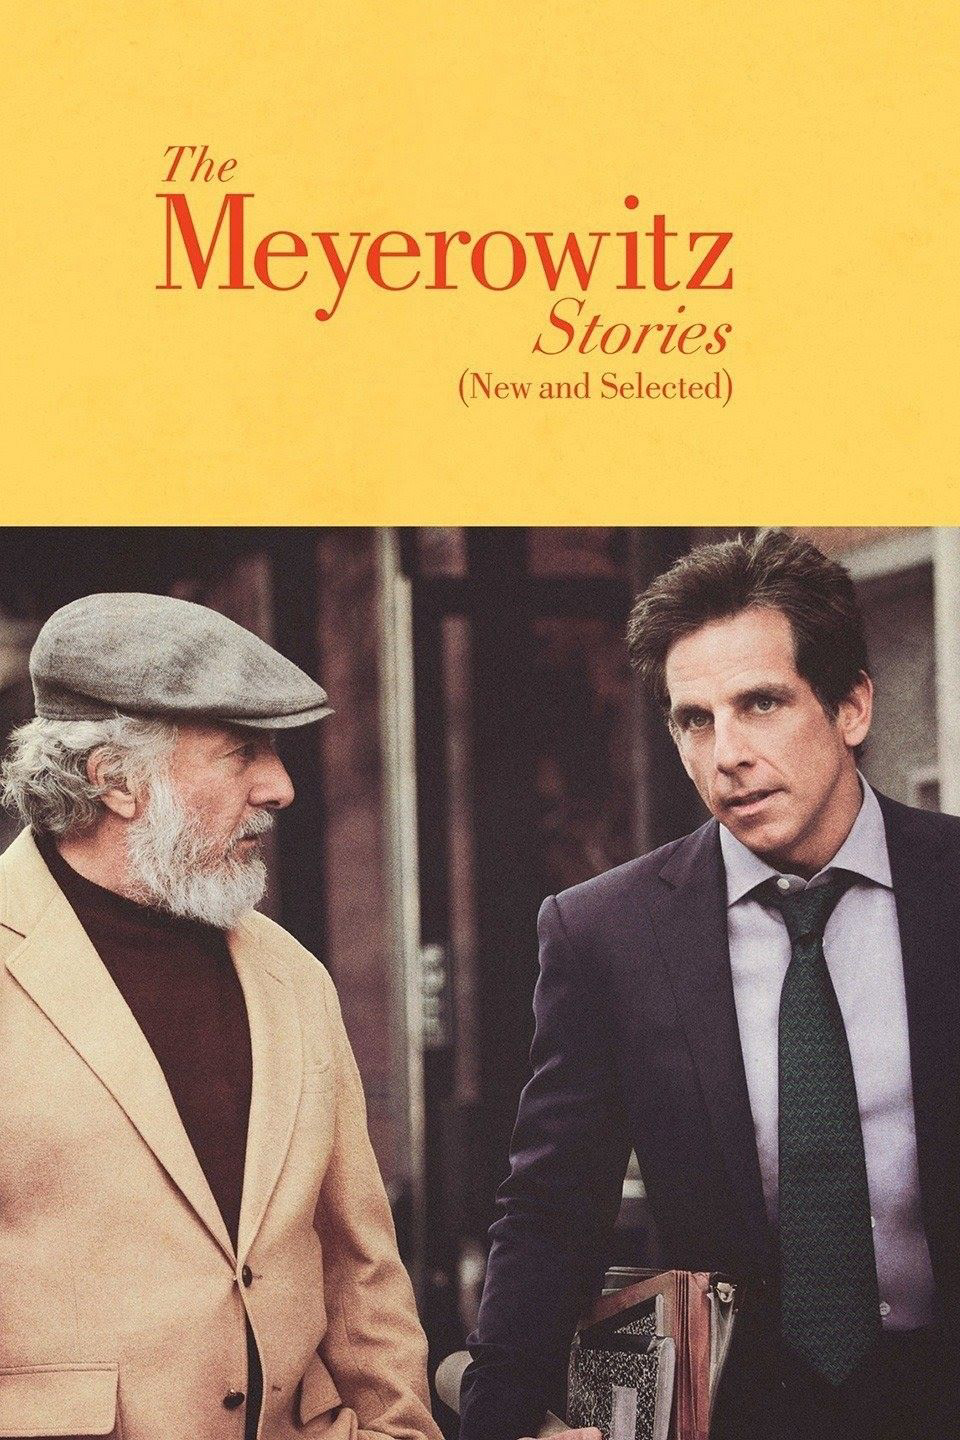 Xem Phim Chuyện nhà Meyerowitz (Mới và tuyển chọn) (The Meyerowitz Stories (New and Selected))